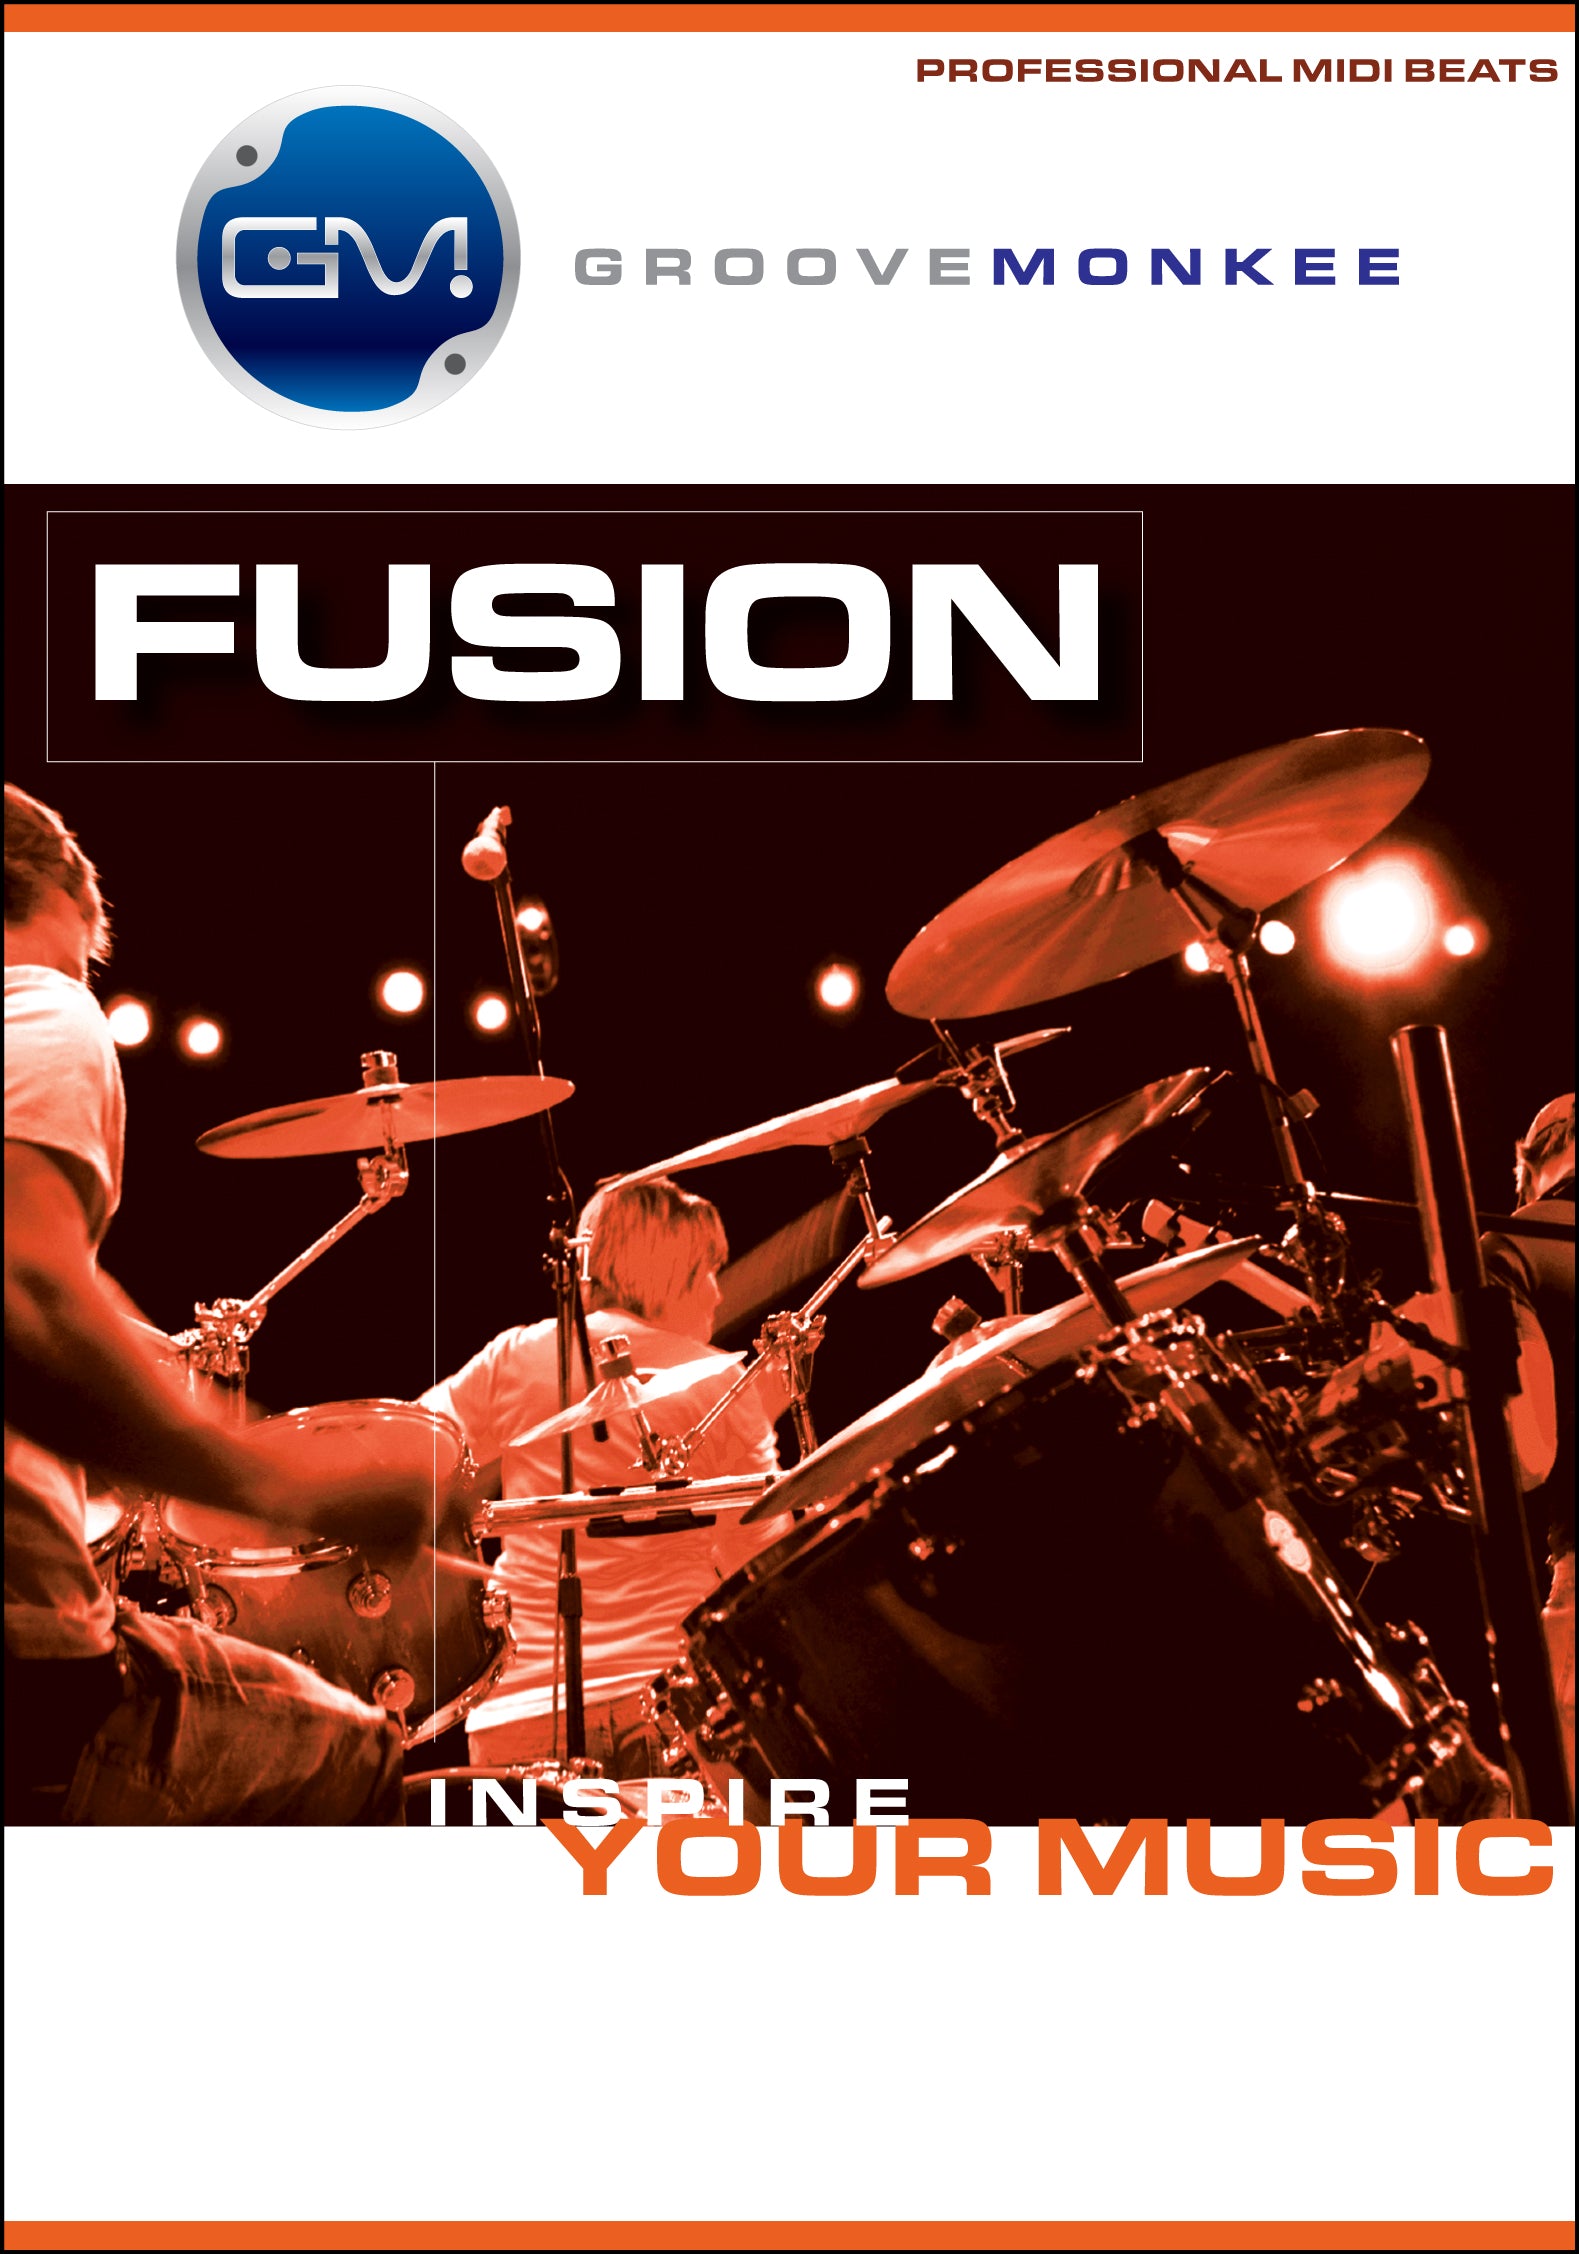 Fusion MIDI Drum Loops